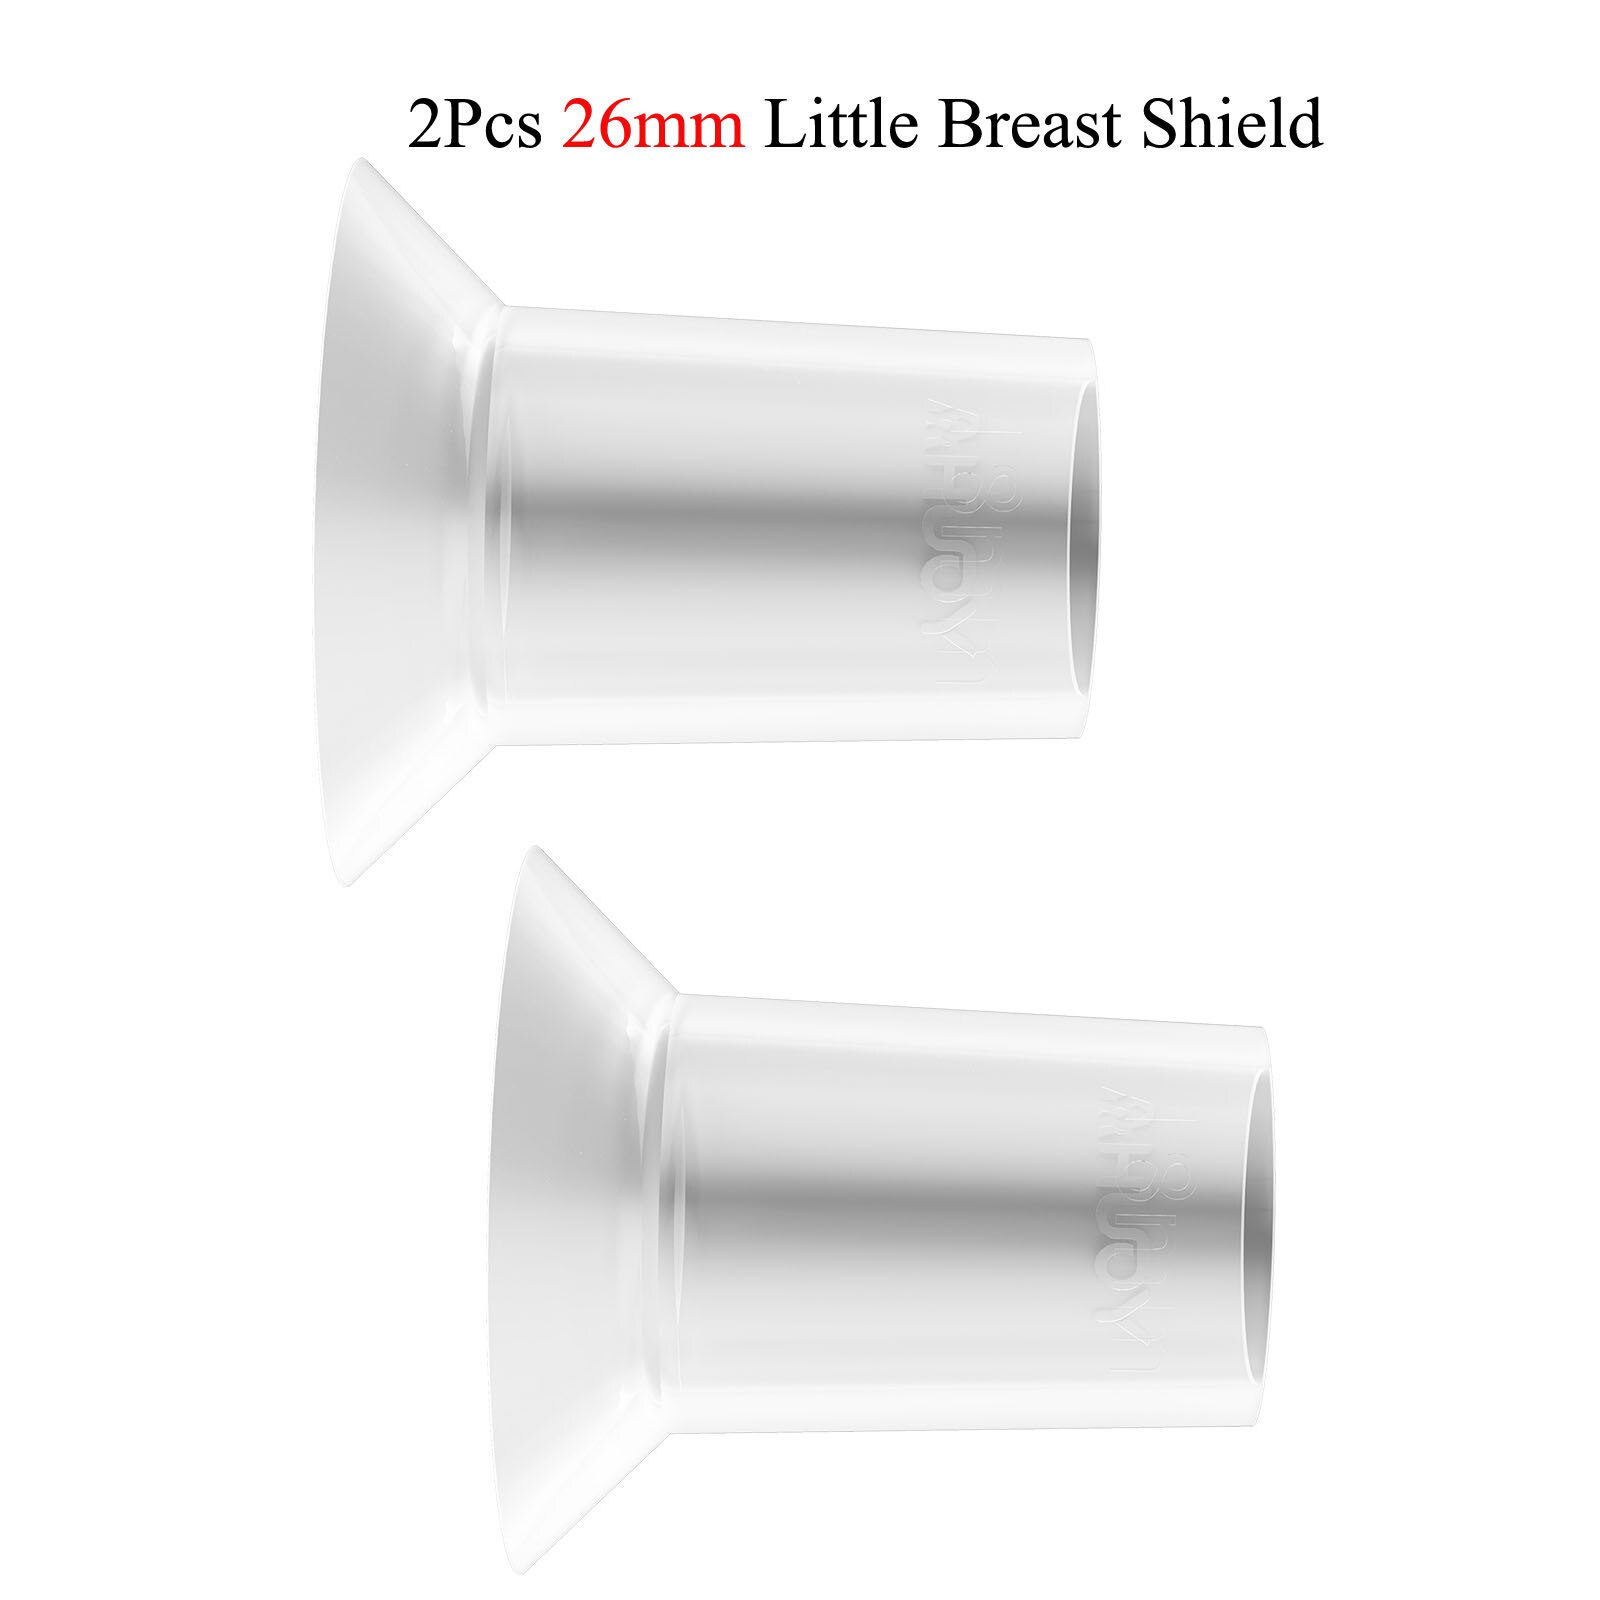 Tiralatte elettrico YOUHA ricaricabile silenzioso indossabile estrattore di latte portatile a mani libere lattiera automatica allattamento al seno: 26mm Little Breast